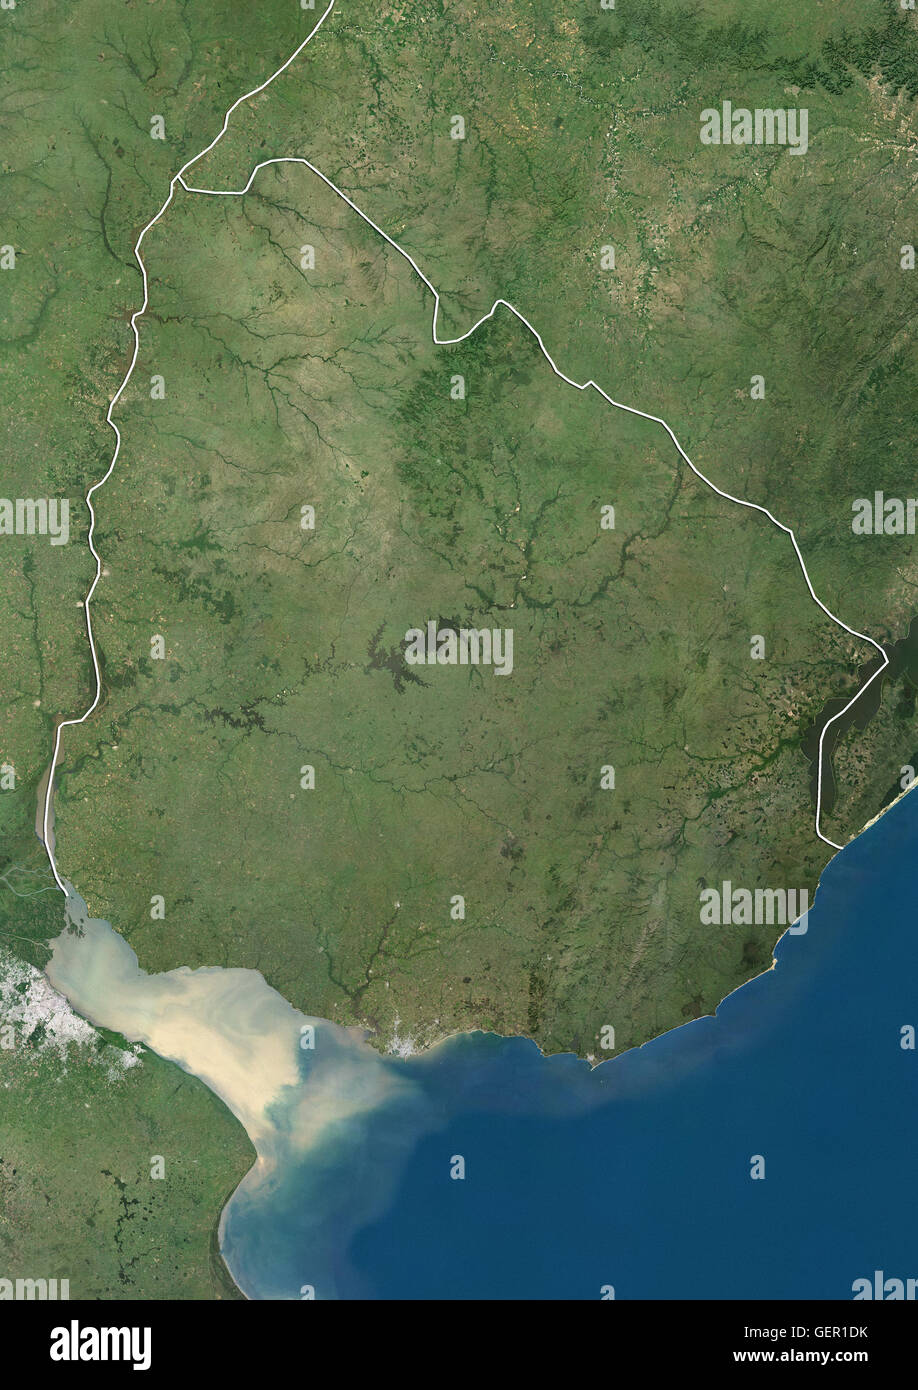 Satellitenansicht von Uruguay (mit Ländergrenzen). Dieses Bild wurde aus Daten von Landsat-Satelliten erworben erstellt. Stockfoto